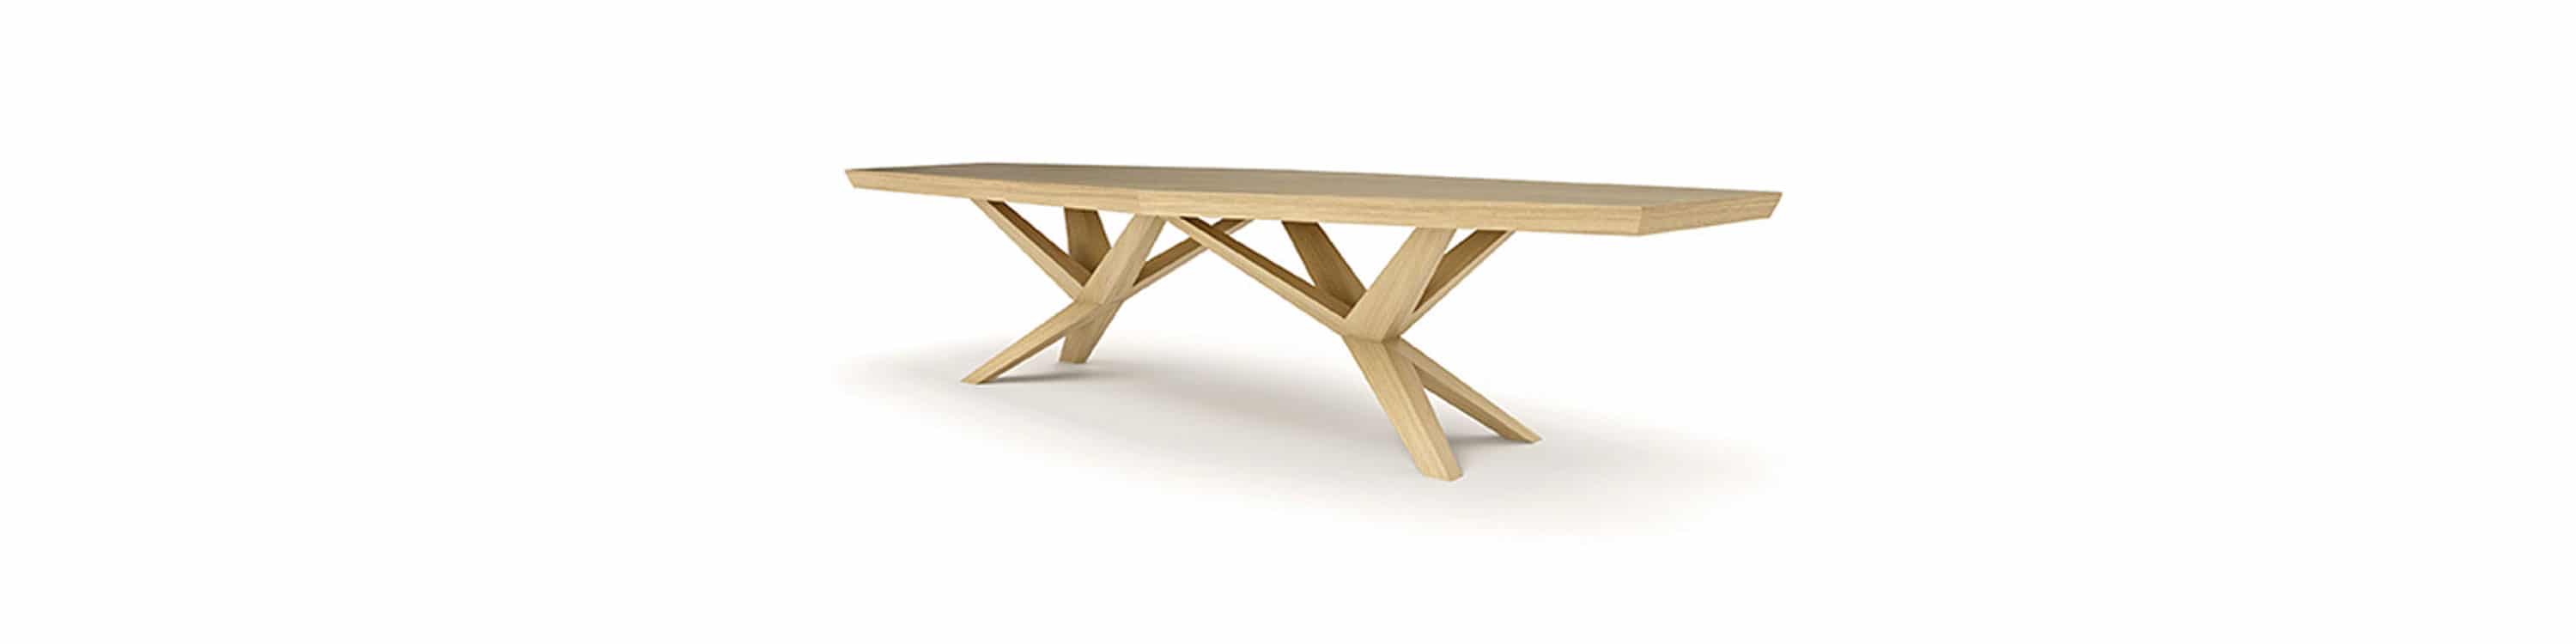 Table design en bois massif chêne